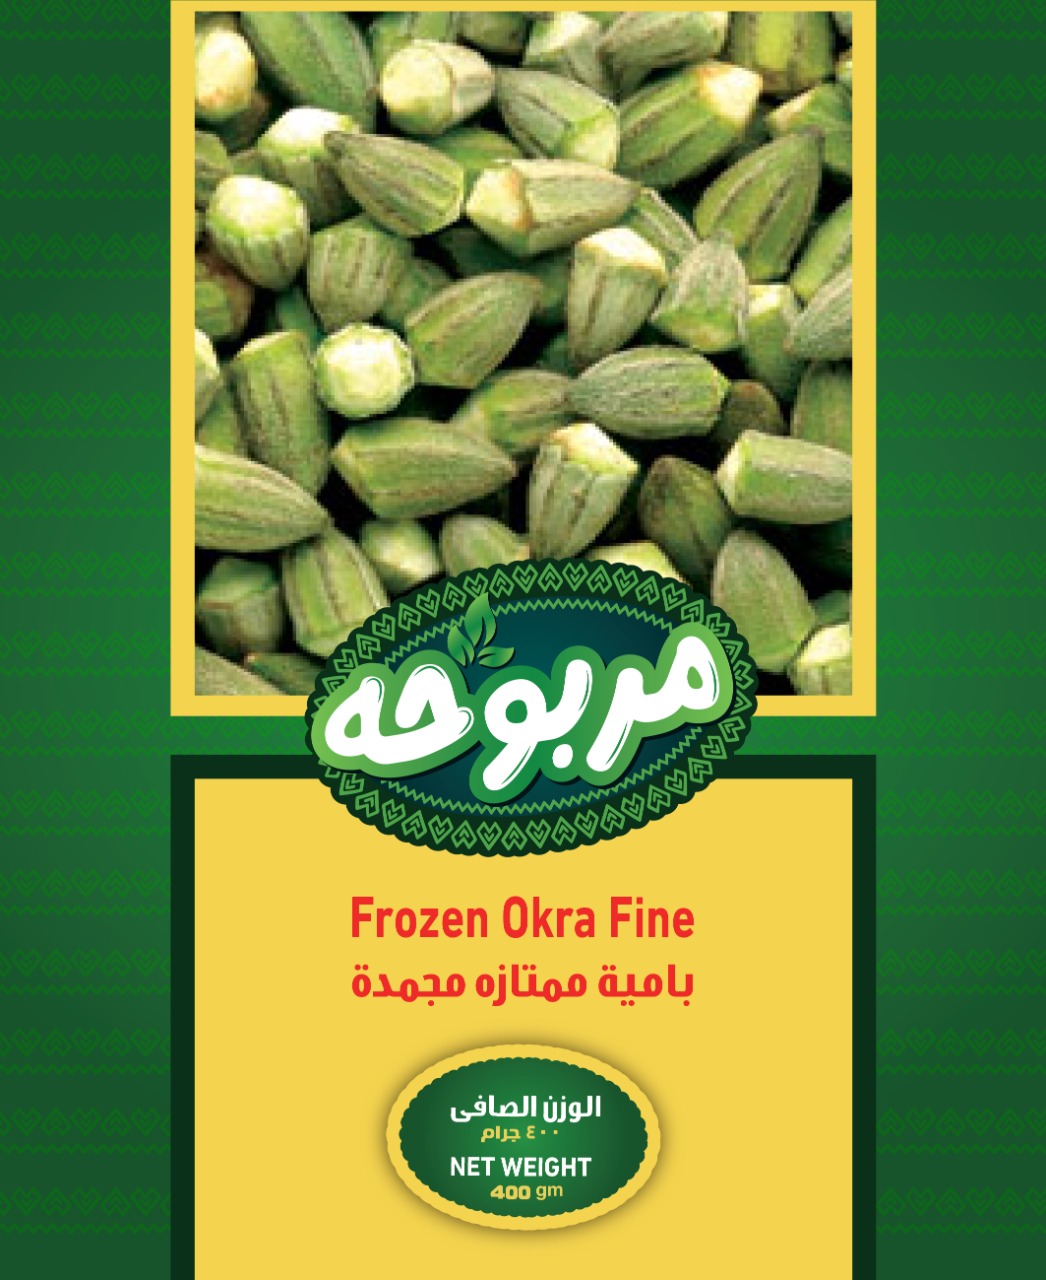 Frozen Okra Fine